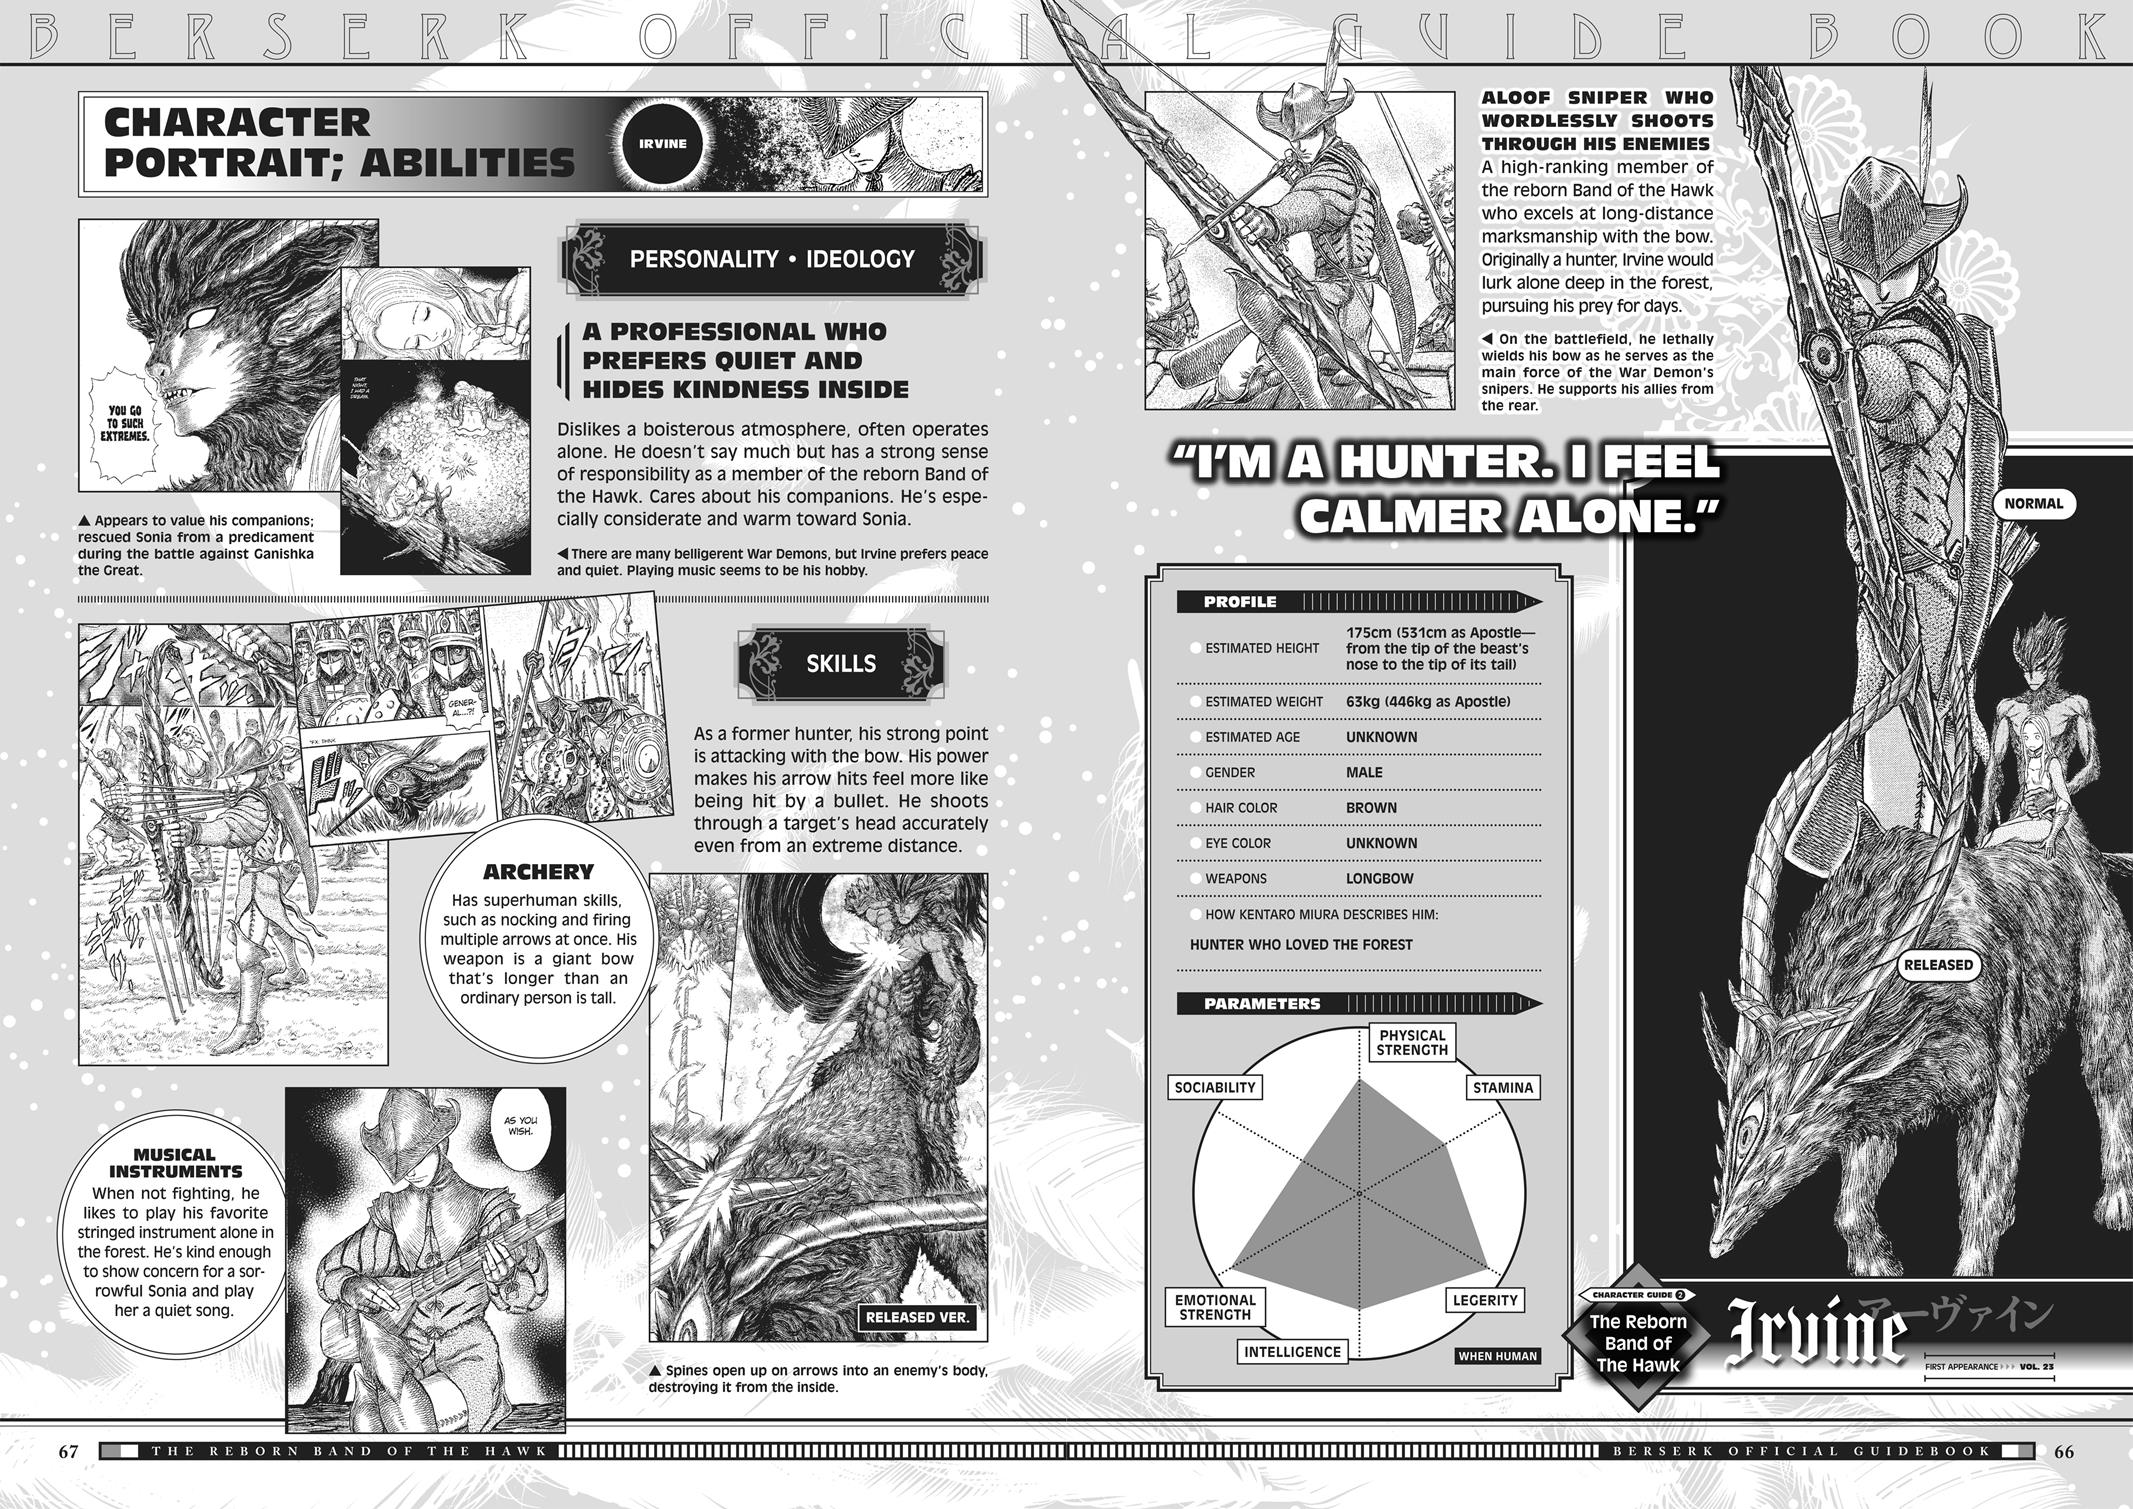 Berserk Manga Chapter 350.5 image 065